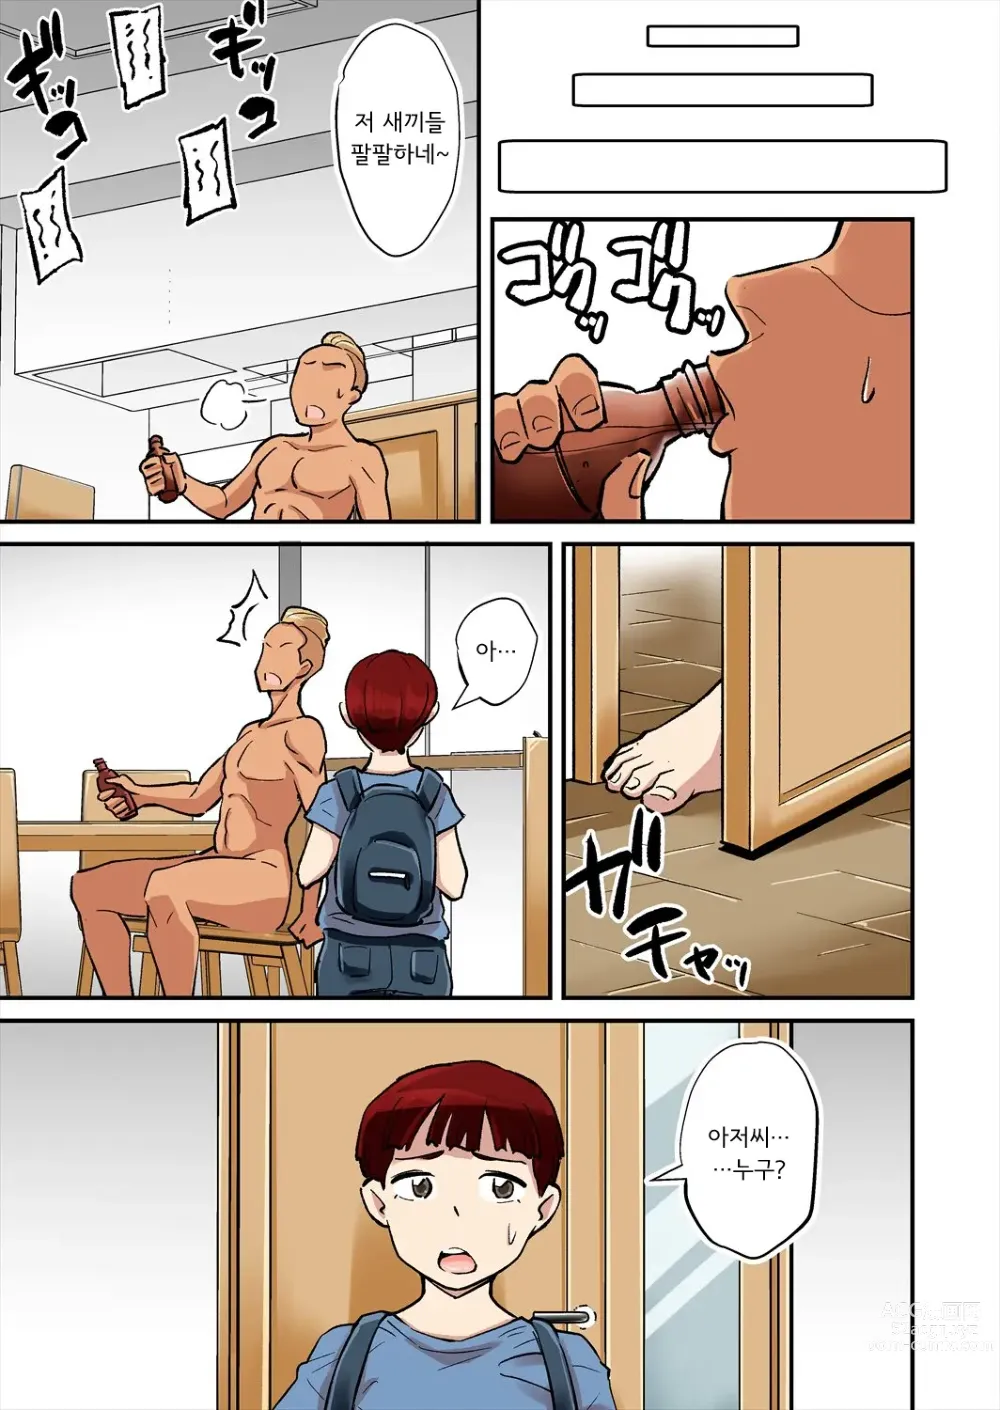 Page 14 of doujinshi 엄마는 DQN에게 돌림빵 당한다